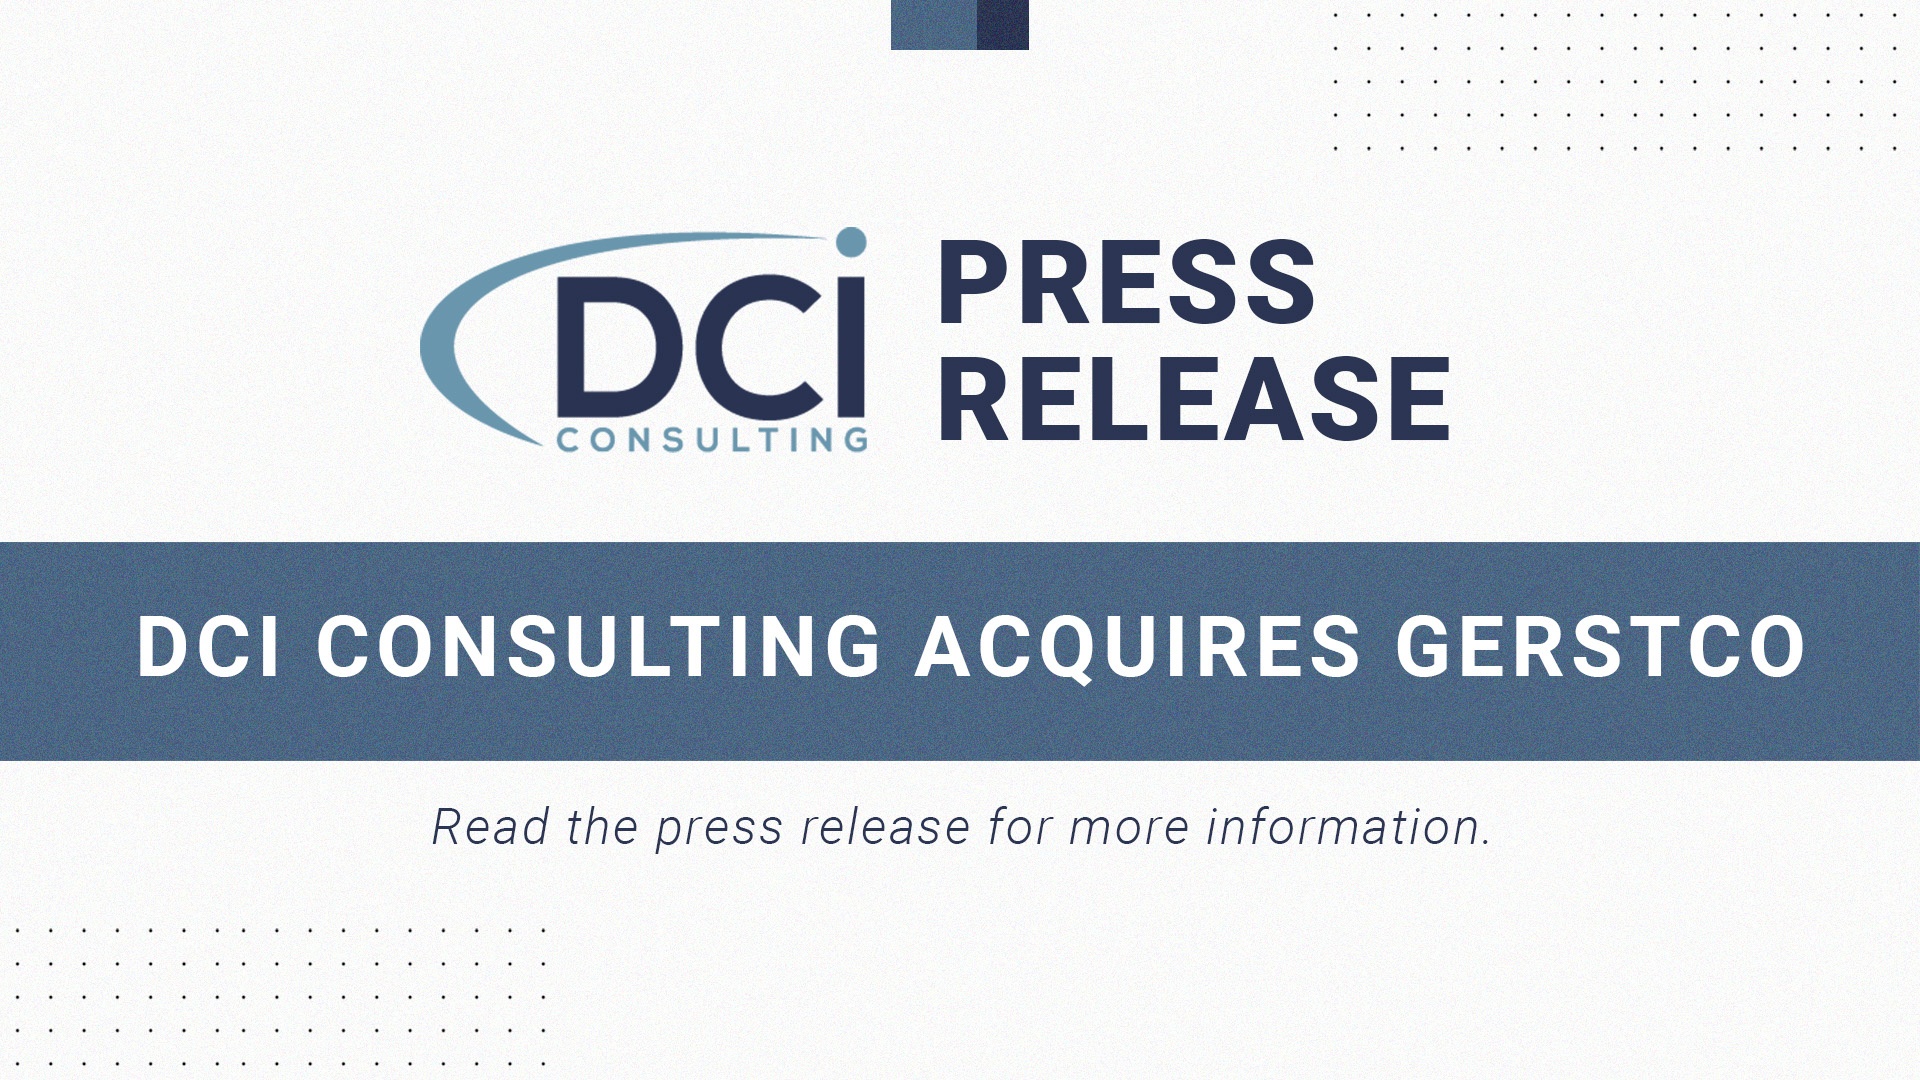 DCI Consulting acquires Gerstco Graphic